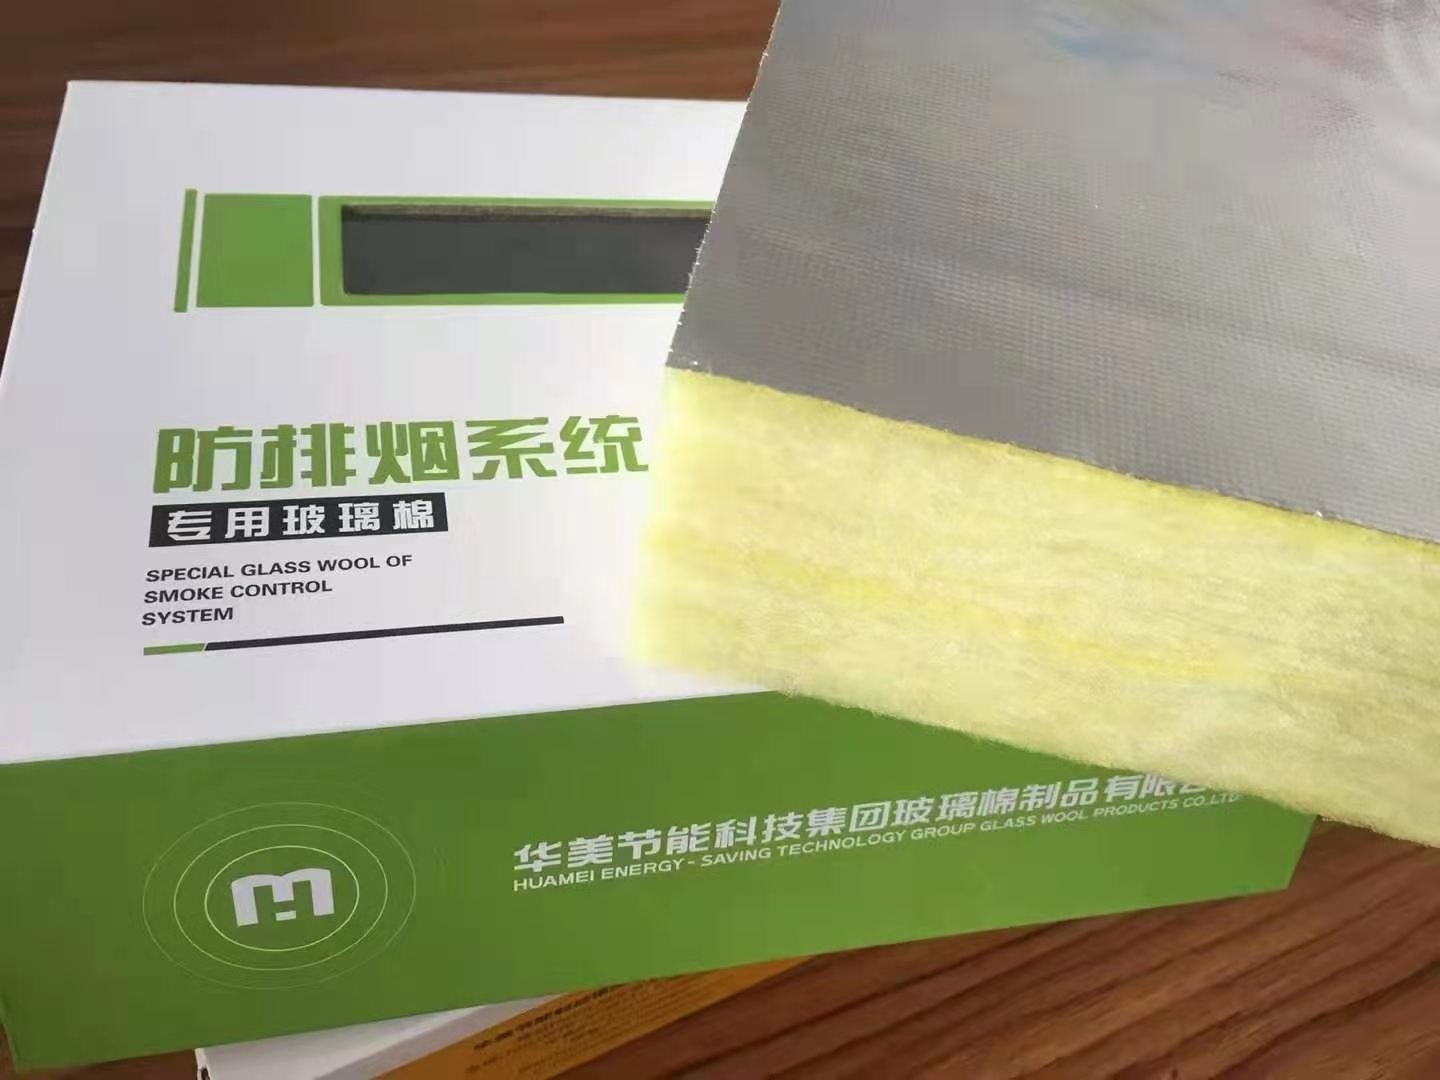 上海华美防排烟专用玻璃棉华美金属管道绝热软包裹材料耐火极限1小时